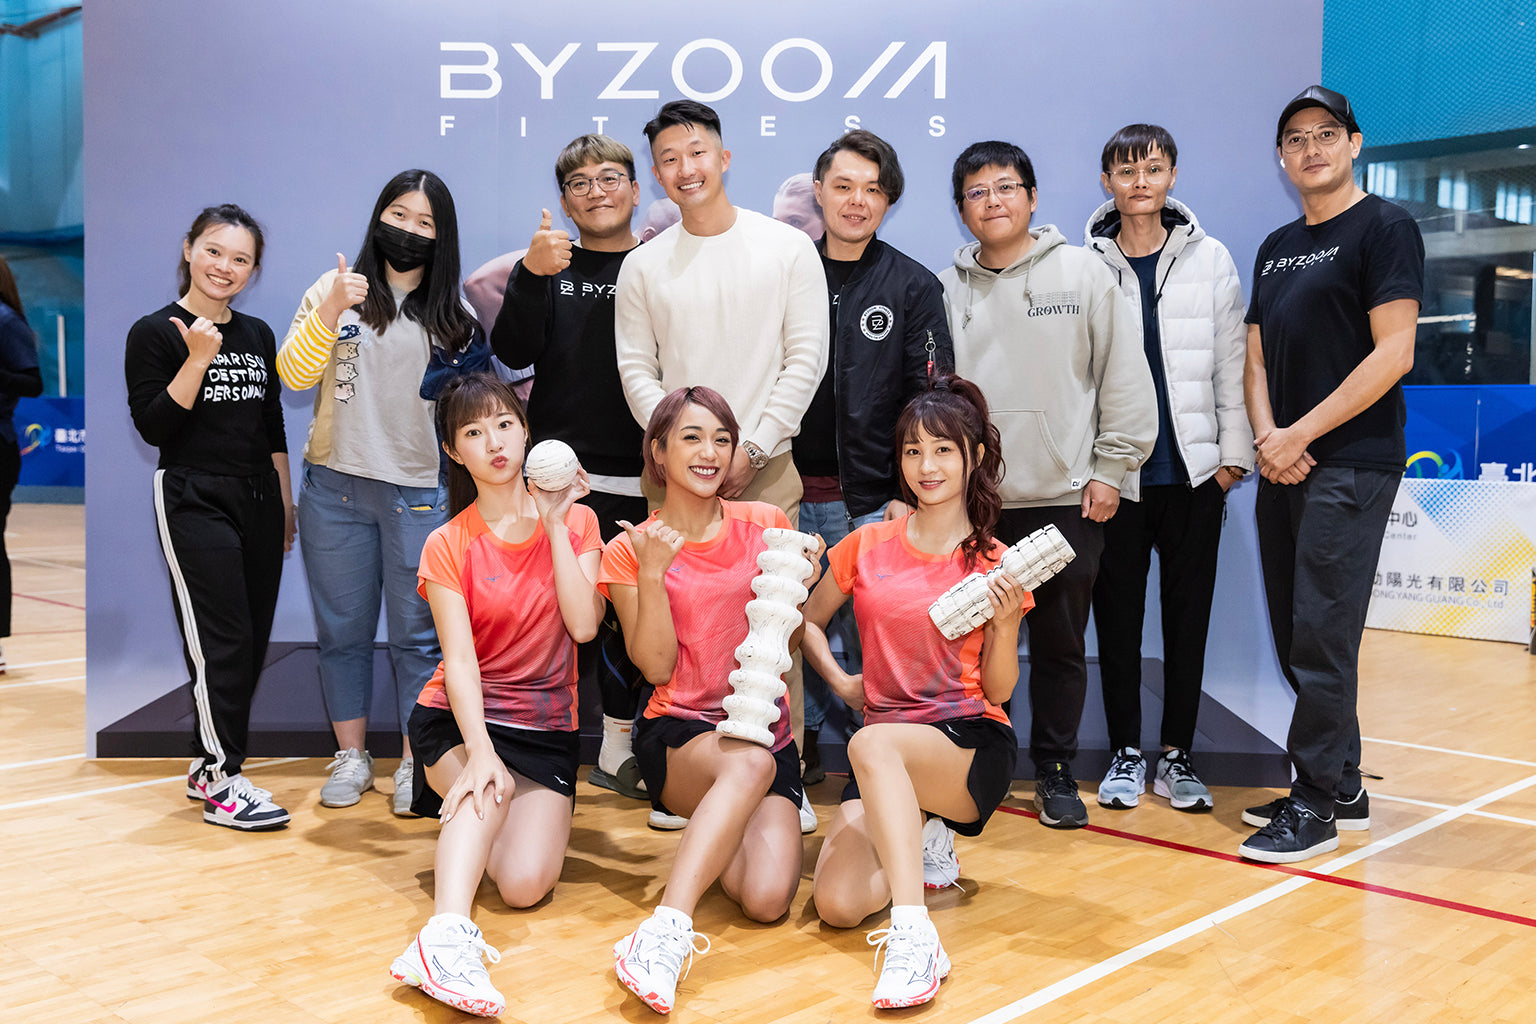 【BYZOOM ╳ 樂天】電商羽球爭霸賽